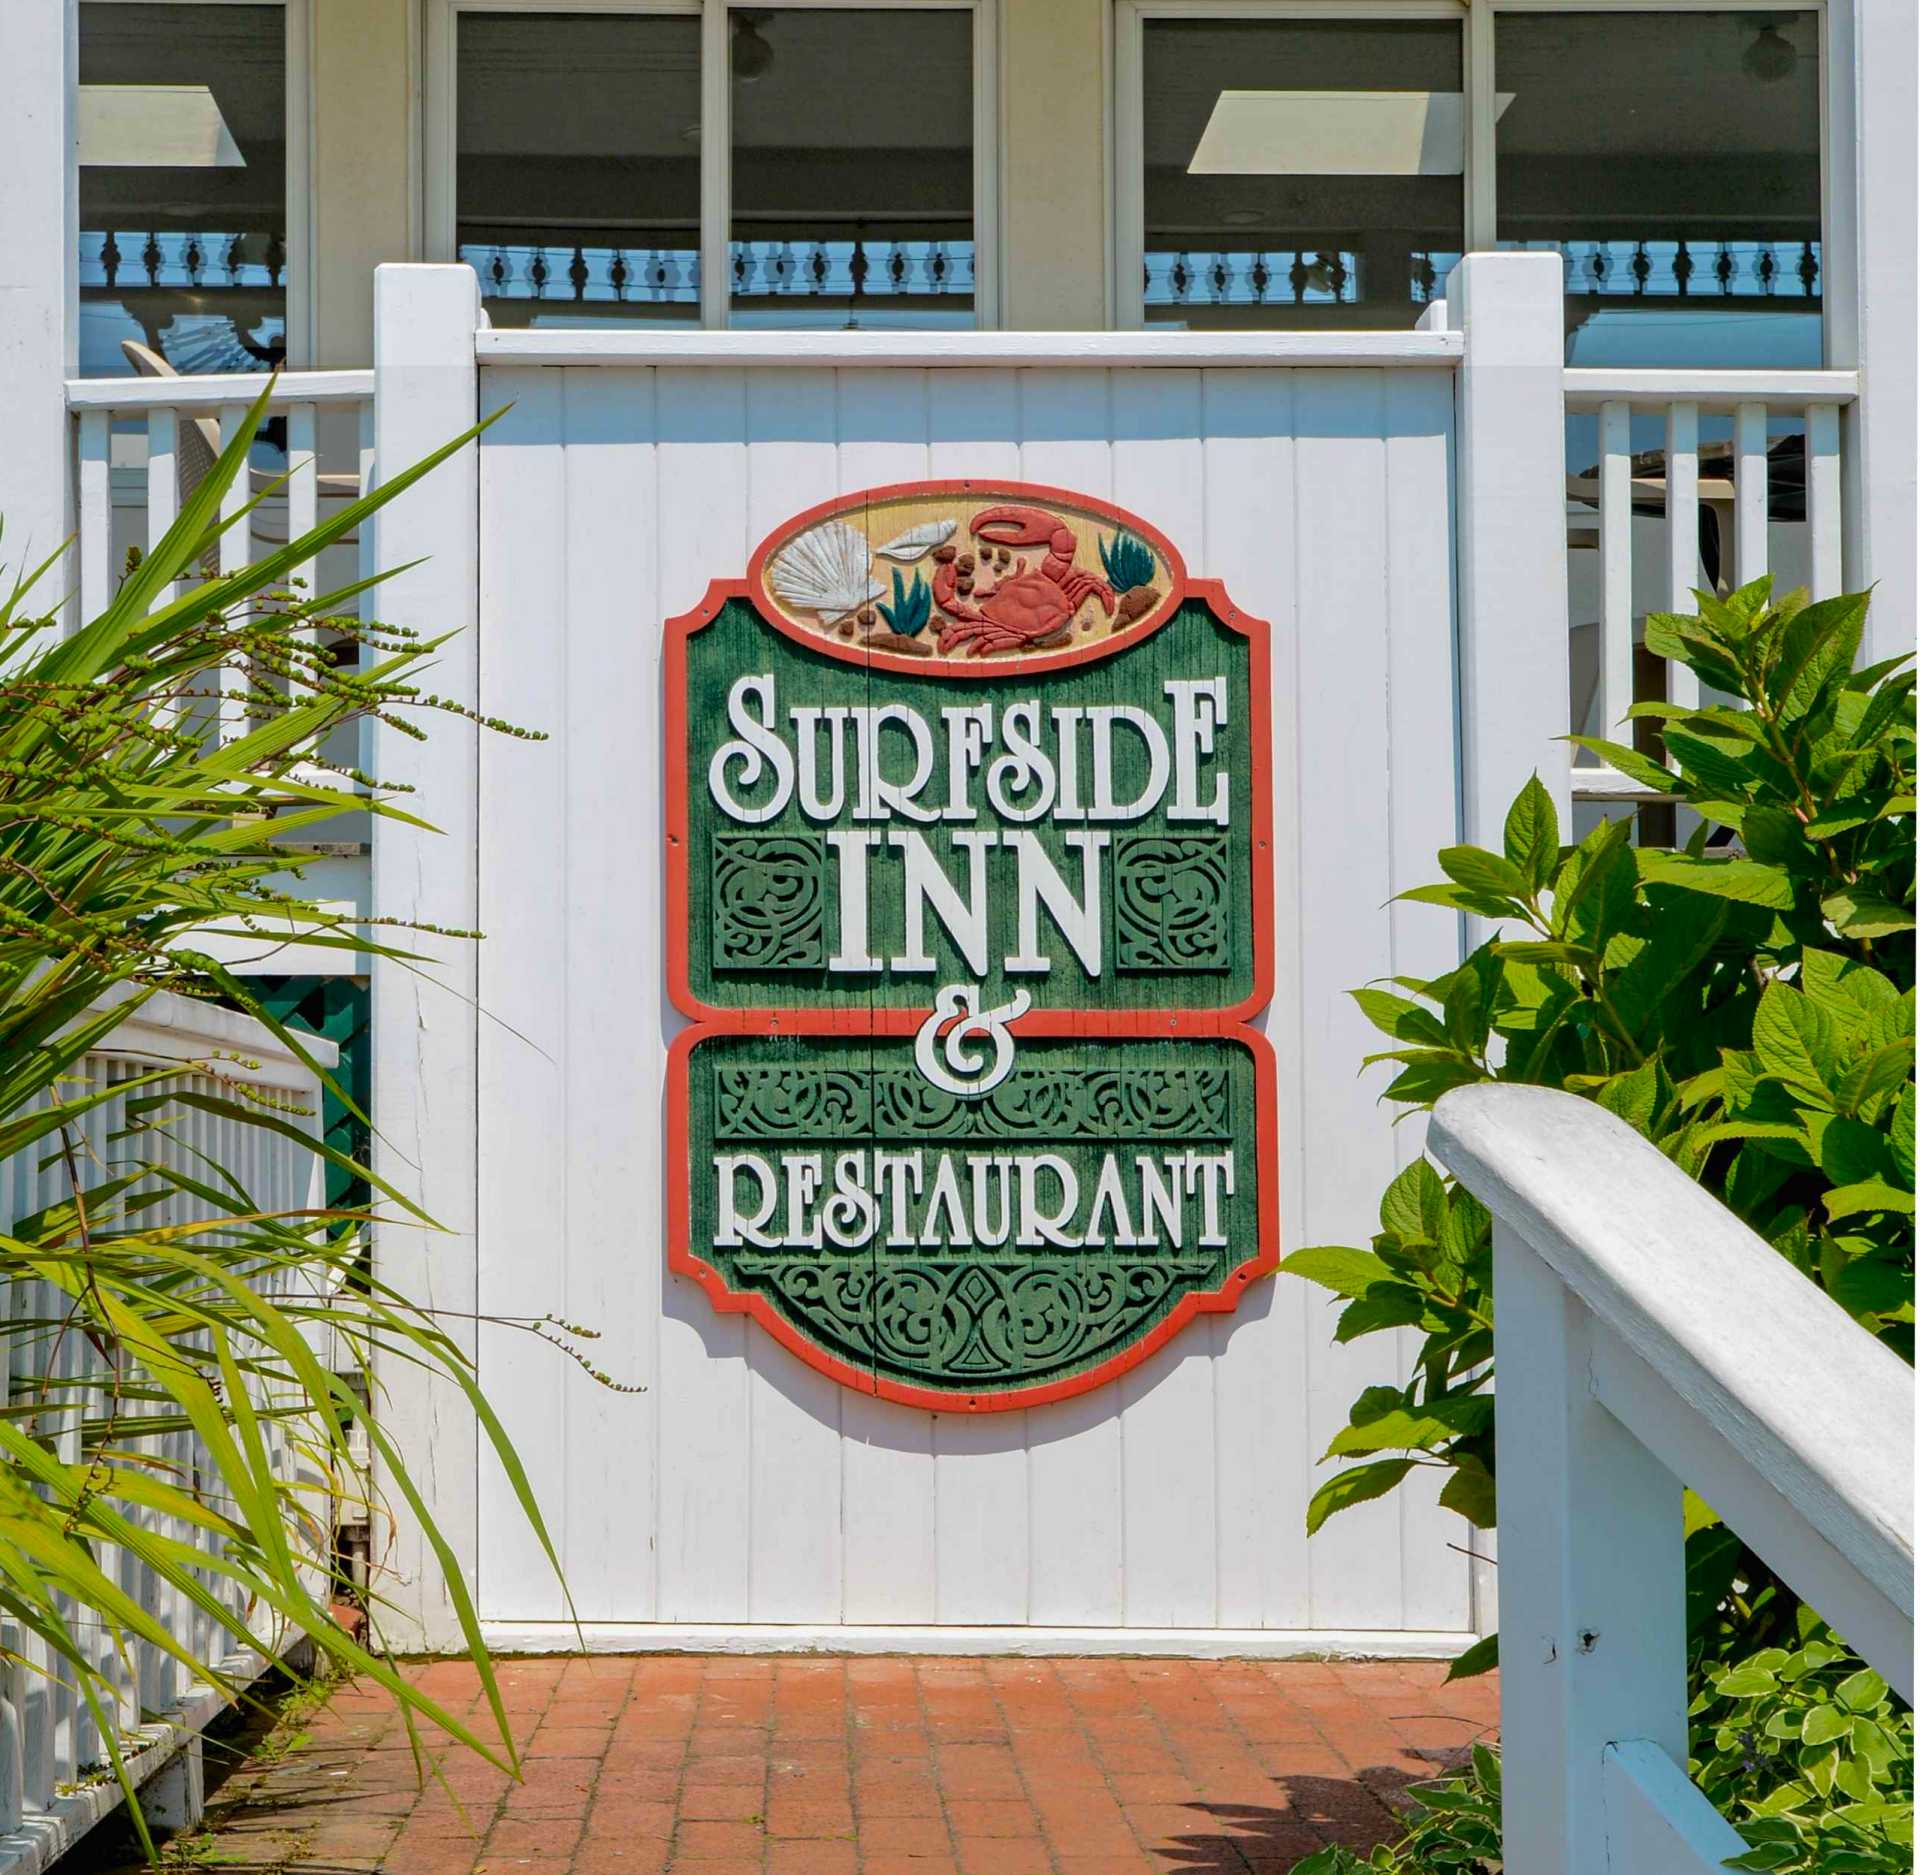 Surfside Inn and Restaurant